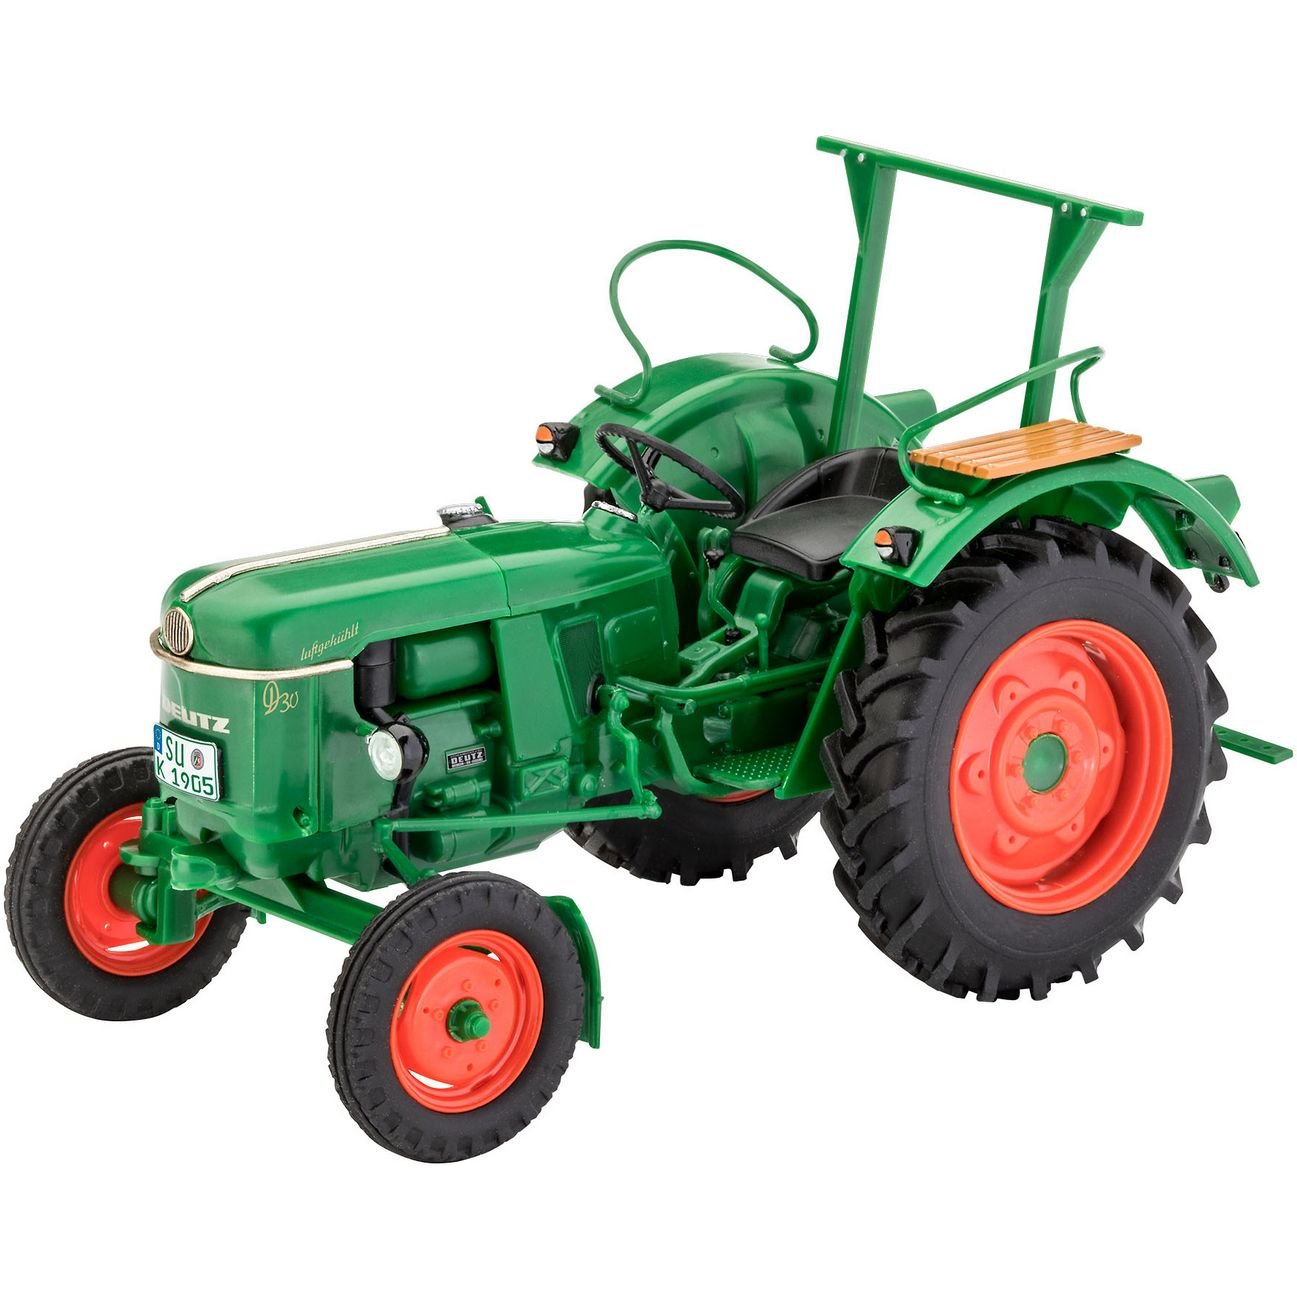 Сборная модель Revell Трактор Deutz D30, уровень 2, масштаб 1:24, 96 деталей (RVL-07826) - фото 2